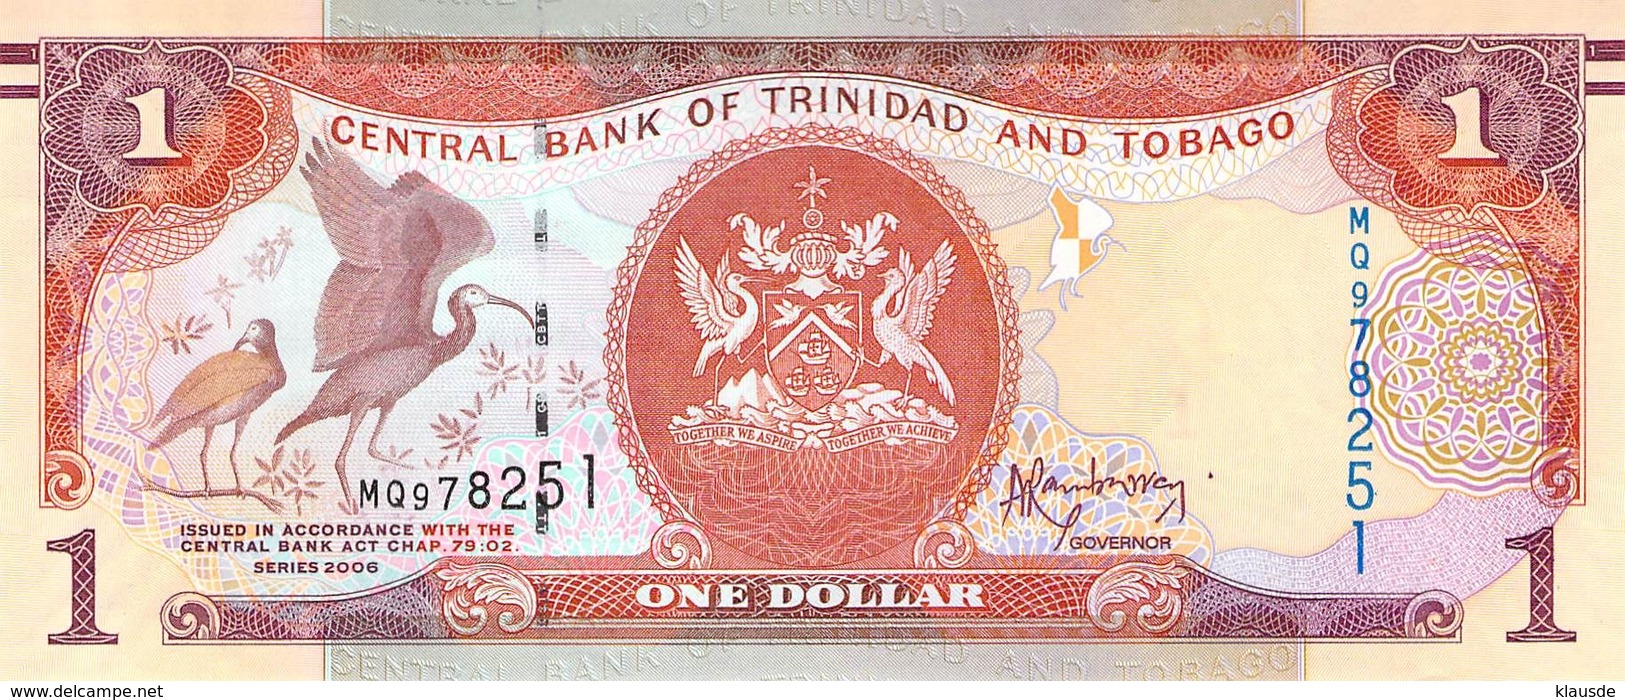 1 Dollar Trinidad And Tobago - Trindad & Tobago